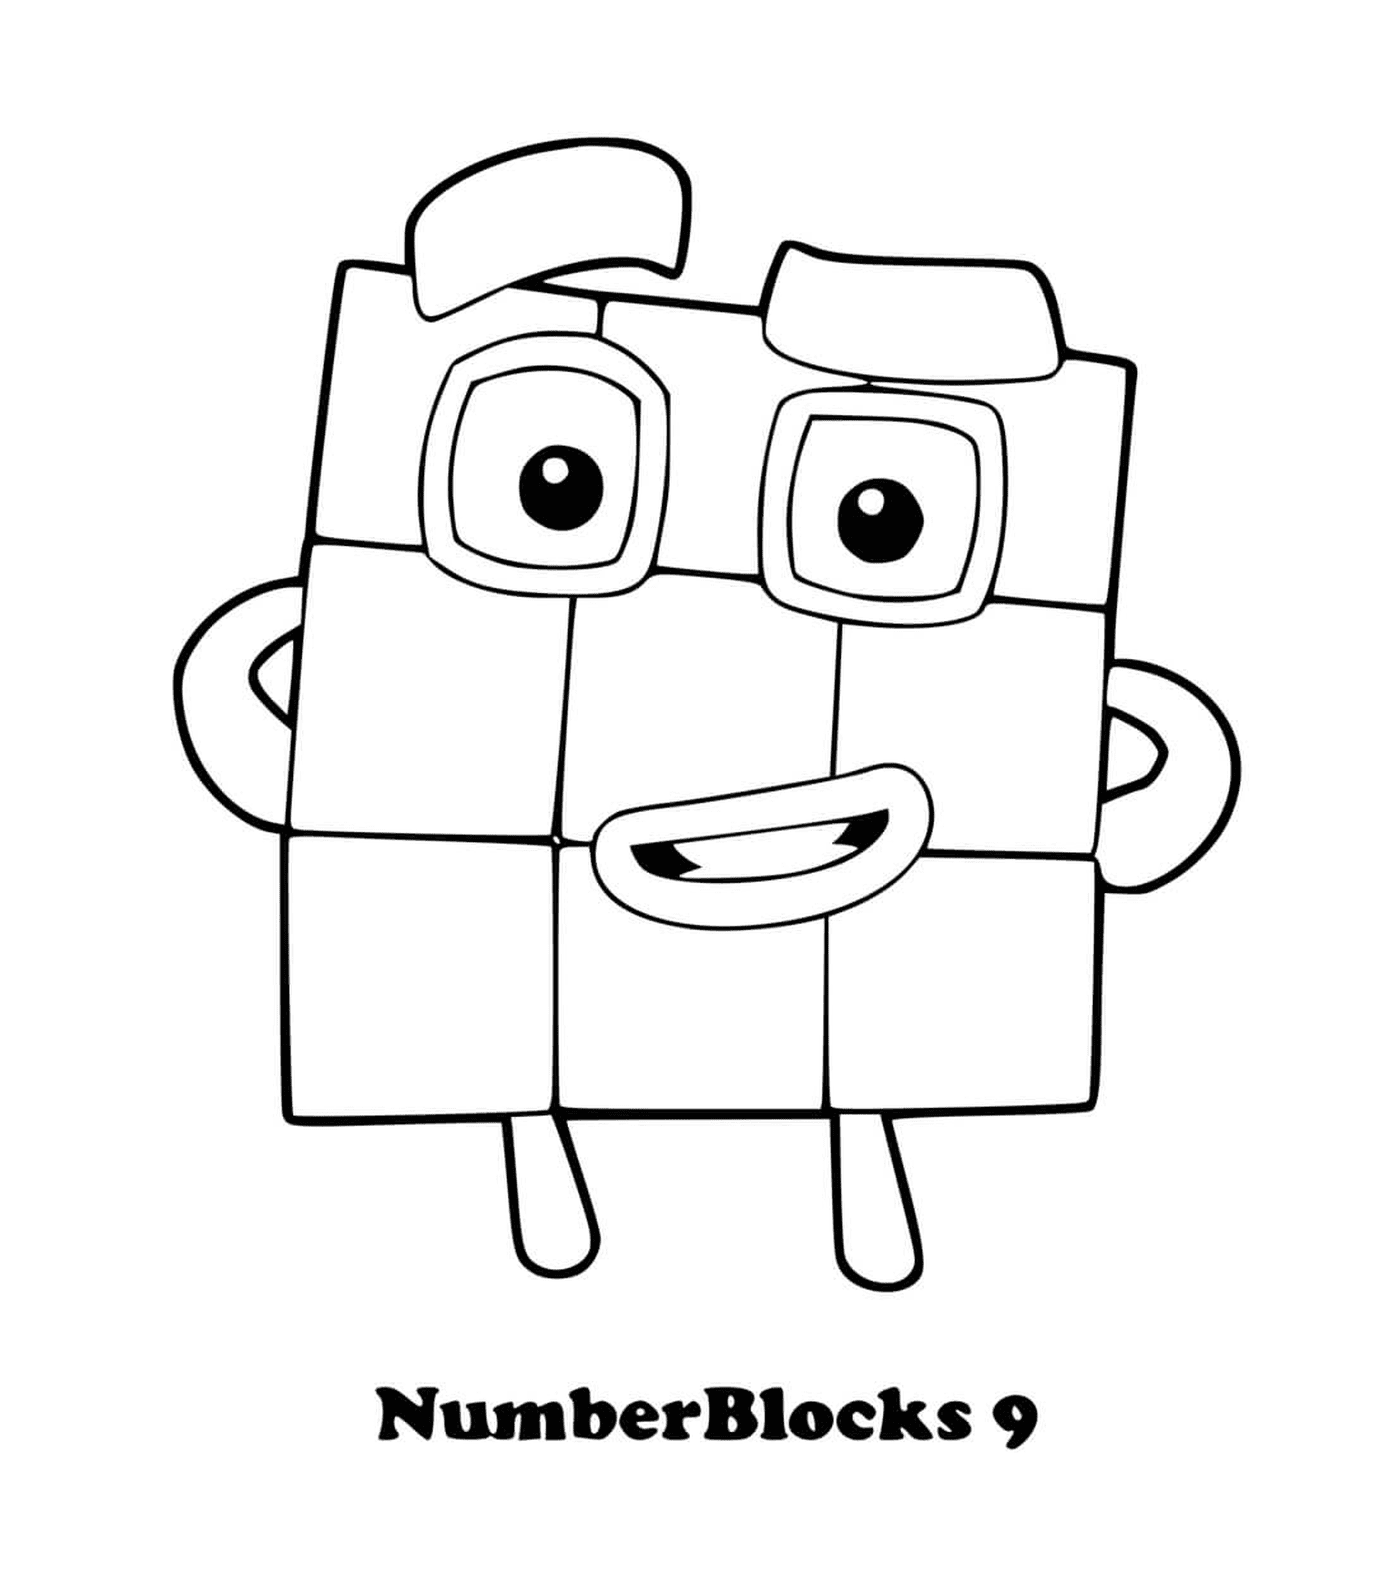  Numero di blocchi numero 9, un quadrato con gli occhi 